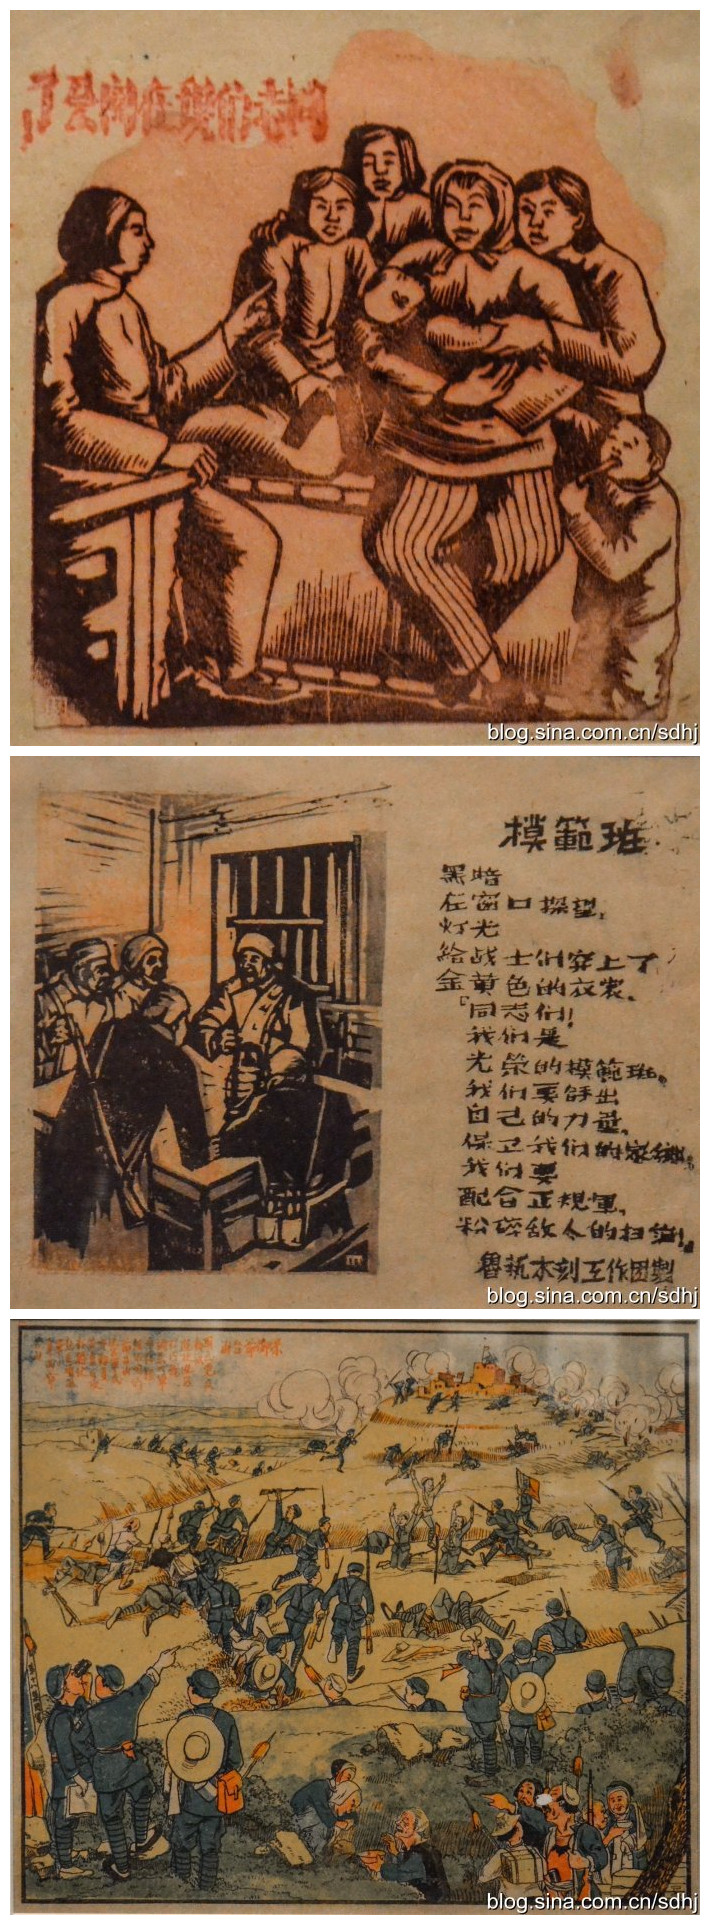 纪念抗日战争胜利70周年馆藏文物系列展之抗战木刻展 (39)